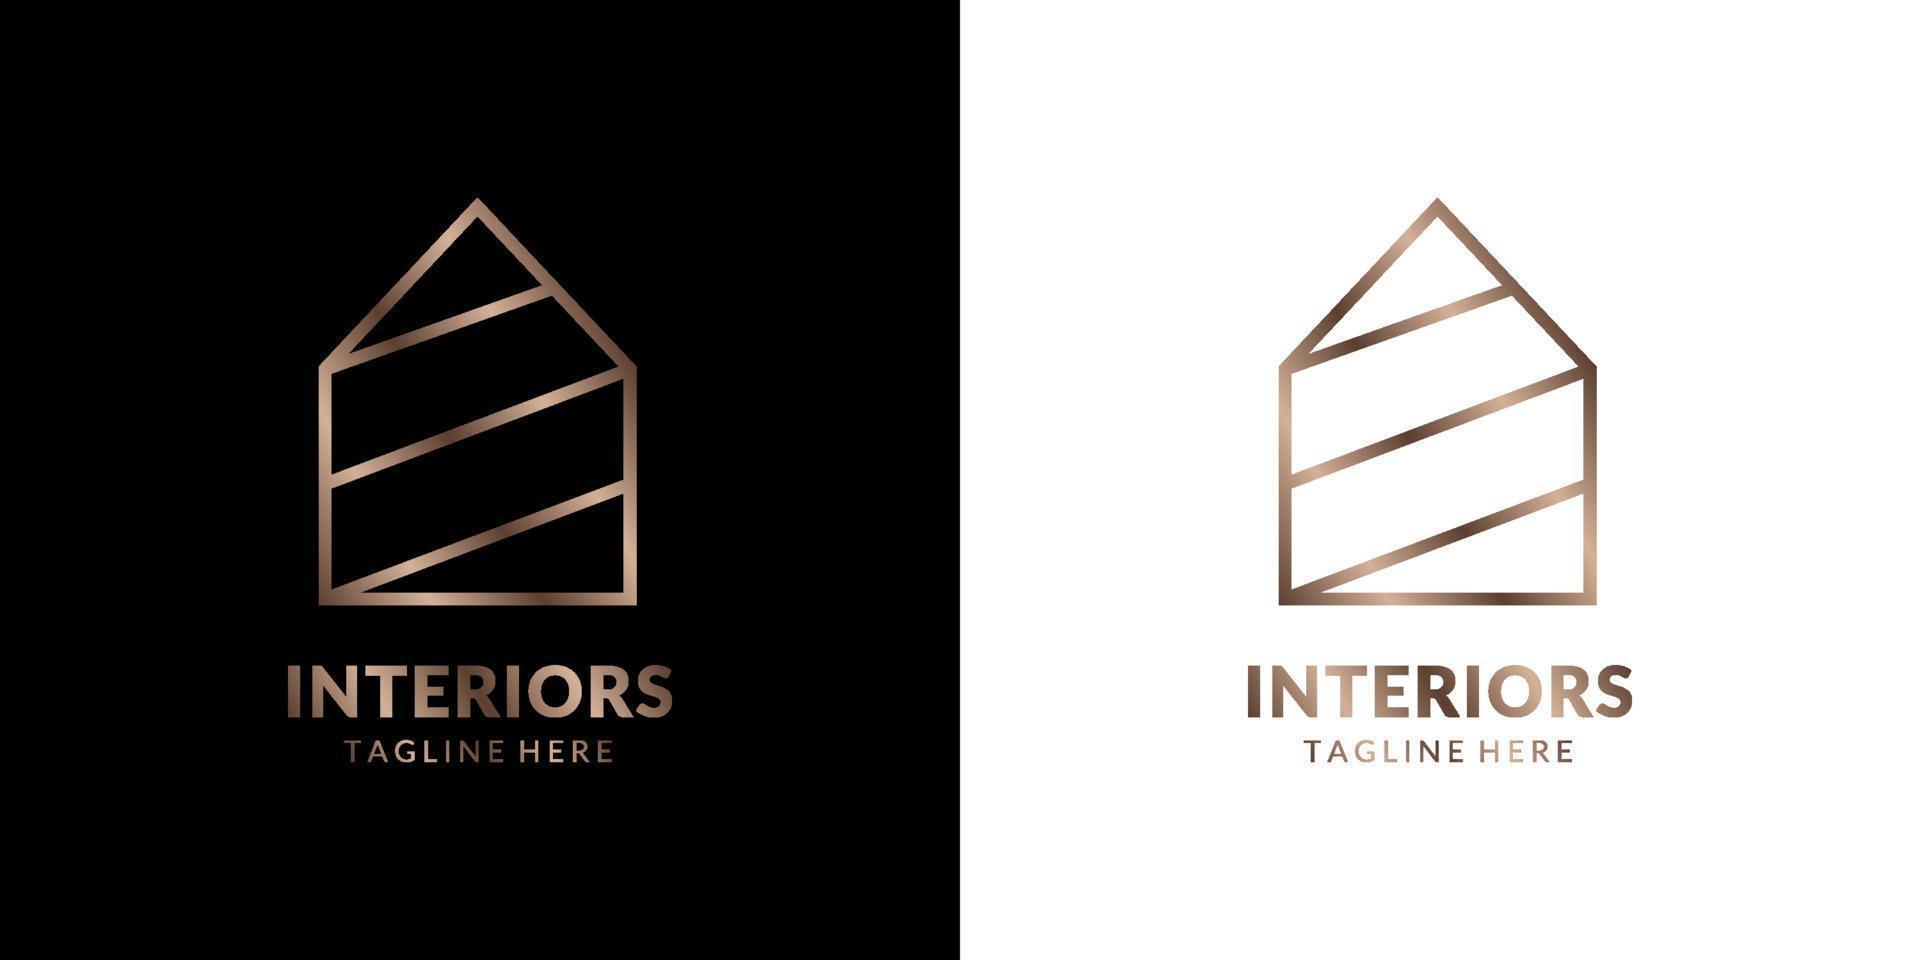 logo della casa minimalista ed elegante per la decorazione di immobili, costruzioni, interni ed esterni vettore